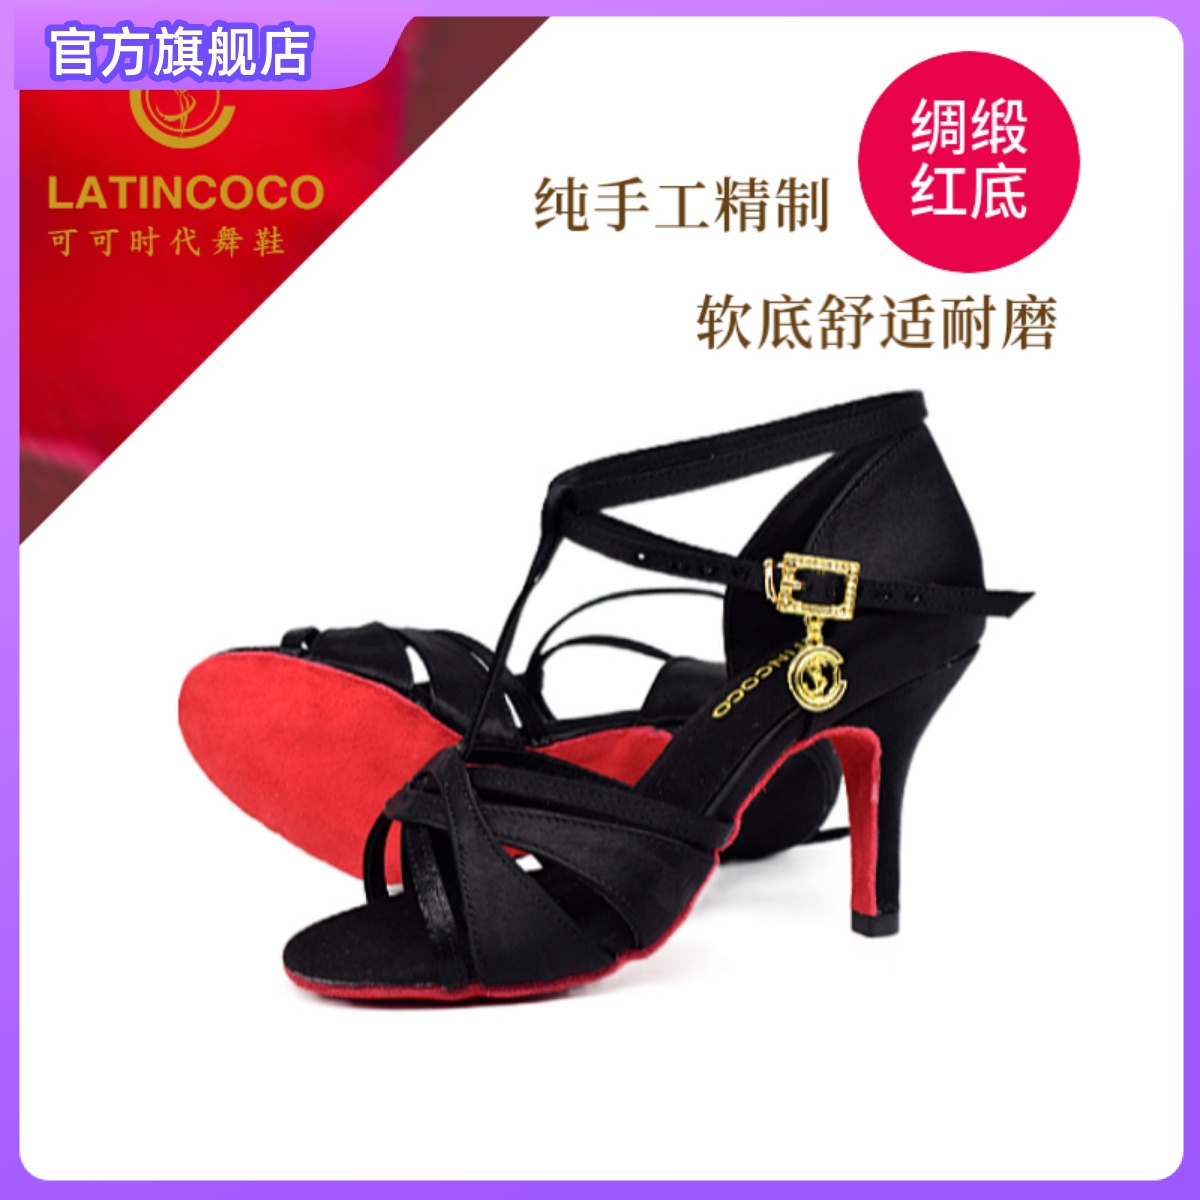 软底舞鞋 LATINCOCO女成人拉丁中跟高跟鞋 可可时代舞鞋 专业红底鞋